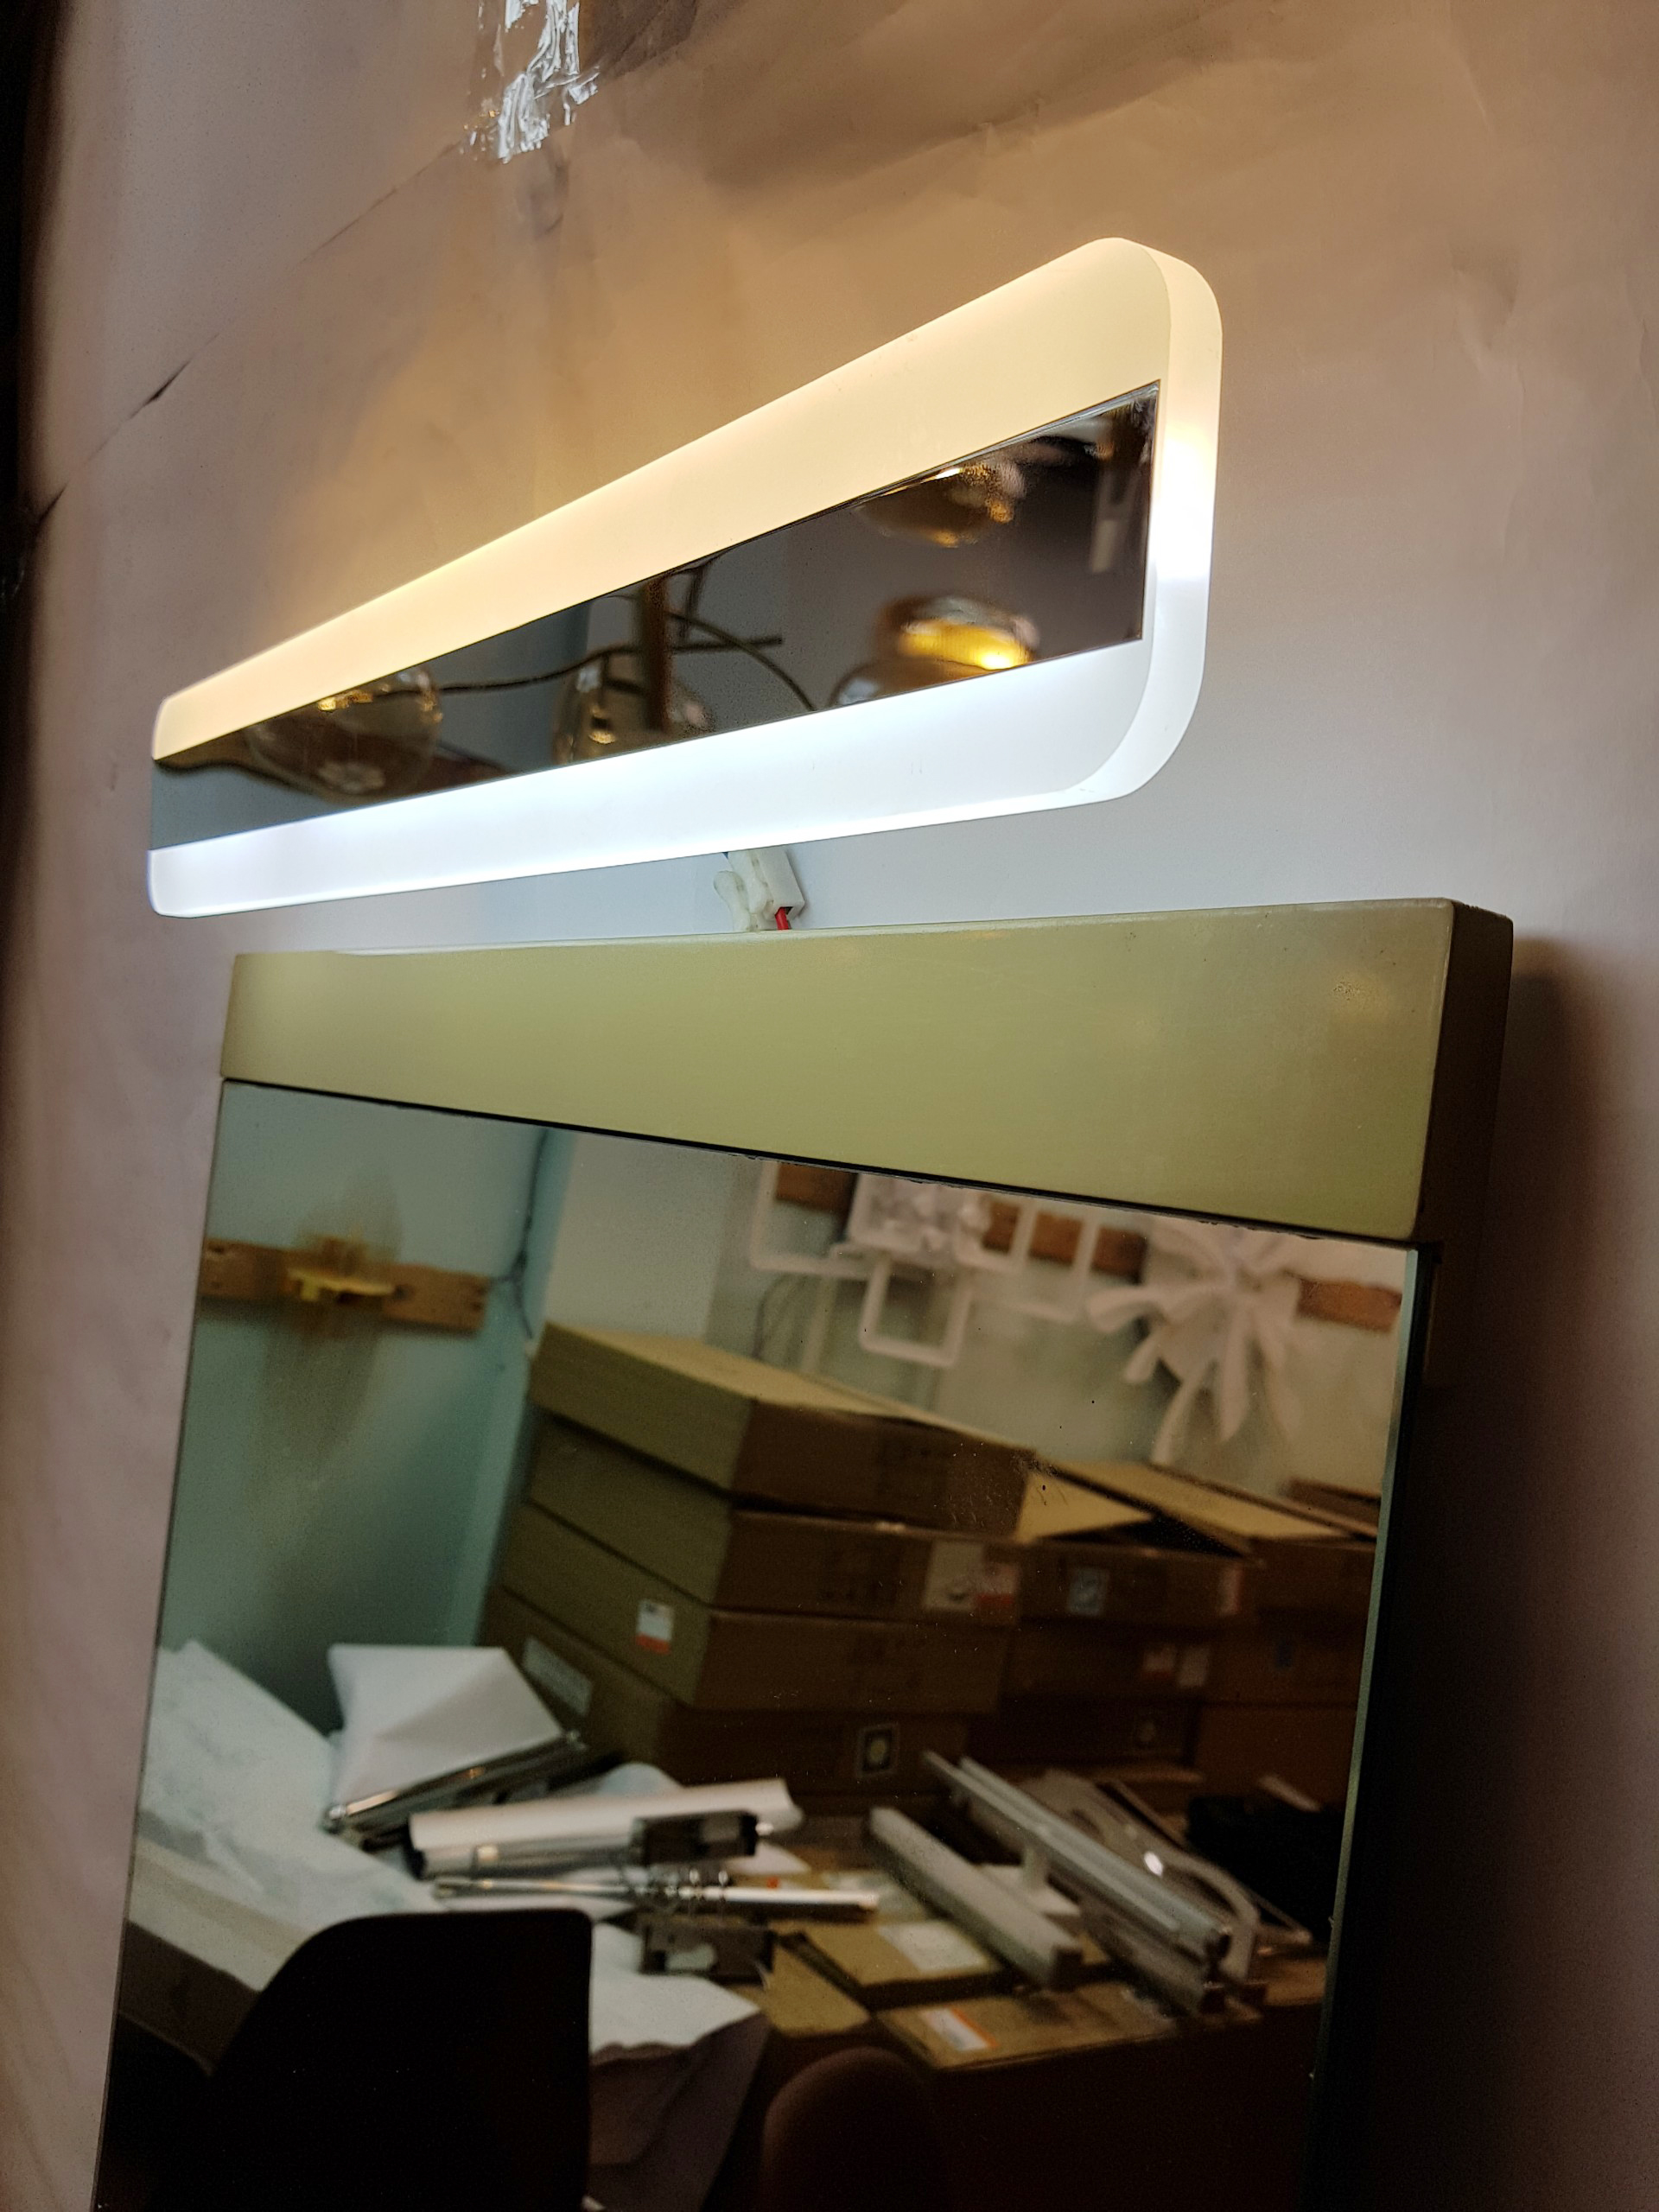 Đèn gương, đèn tranh trang trí phòng tắm hiện đại đẹp  - DG0012-510